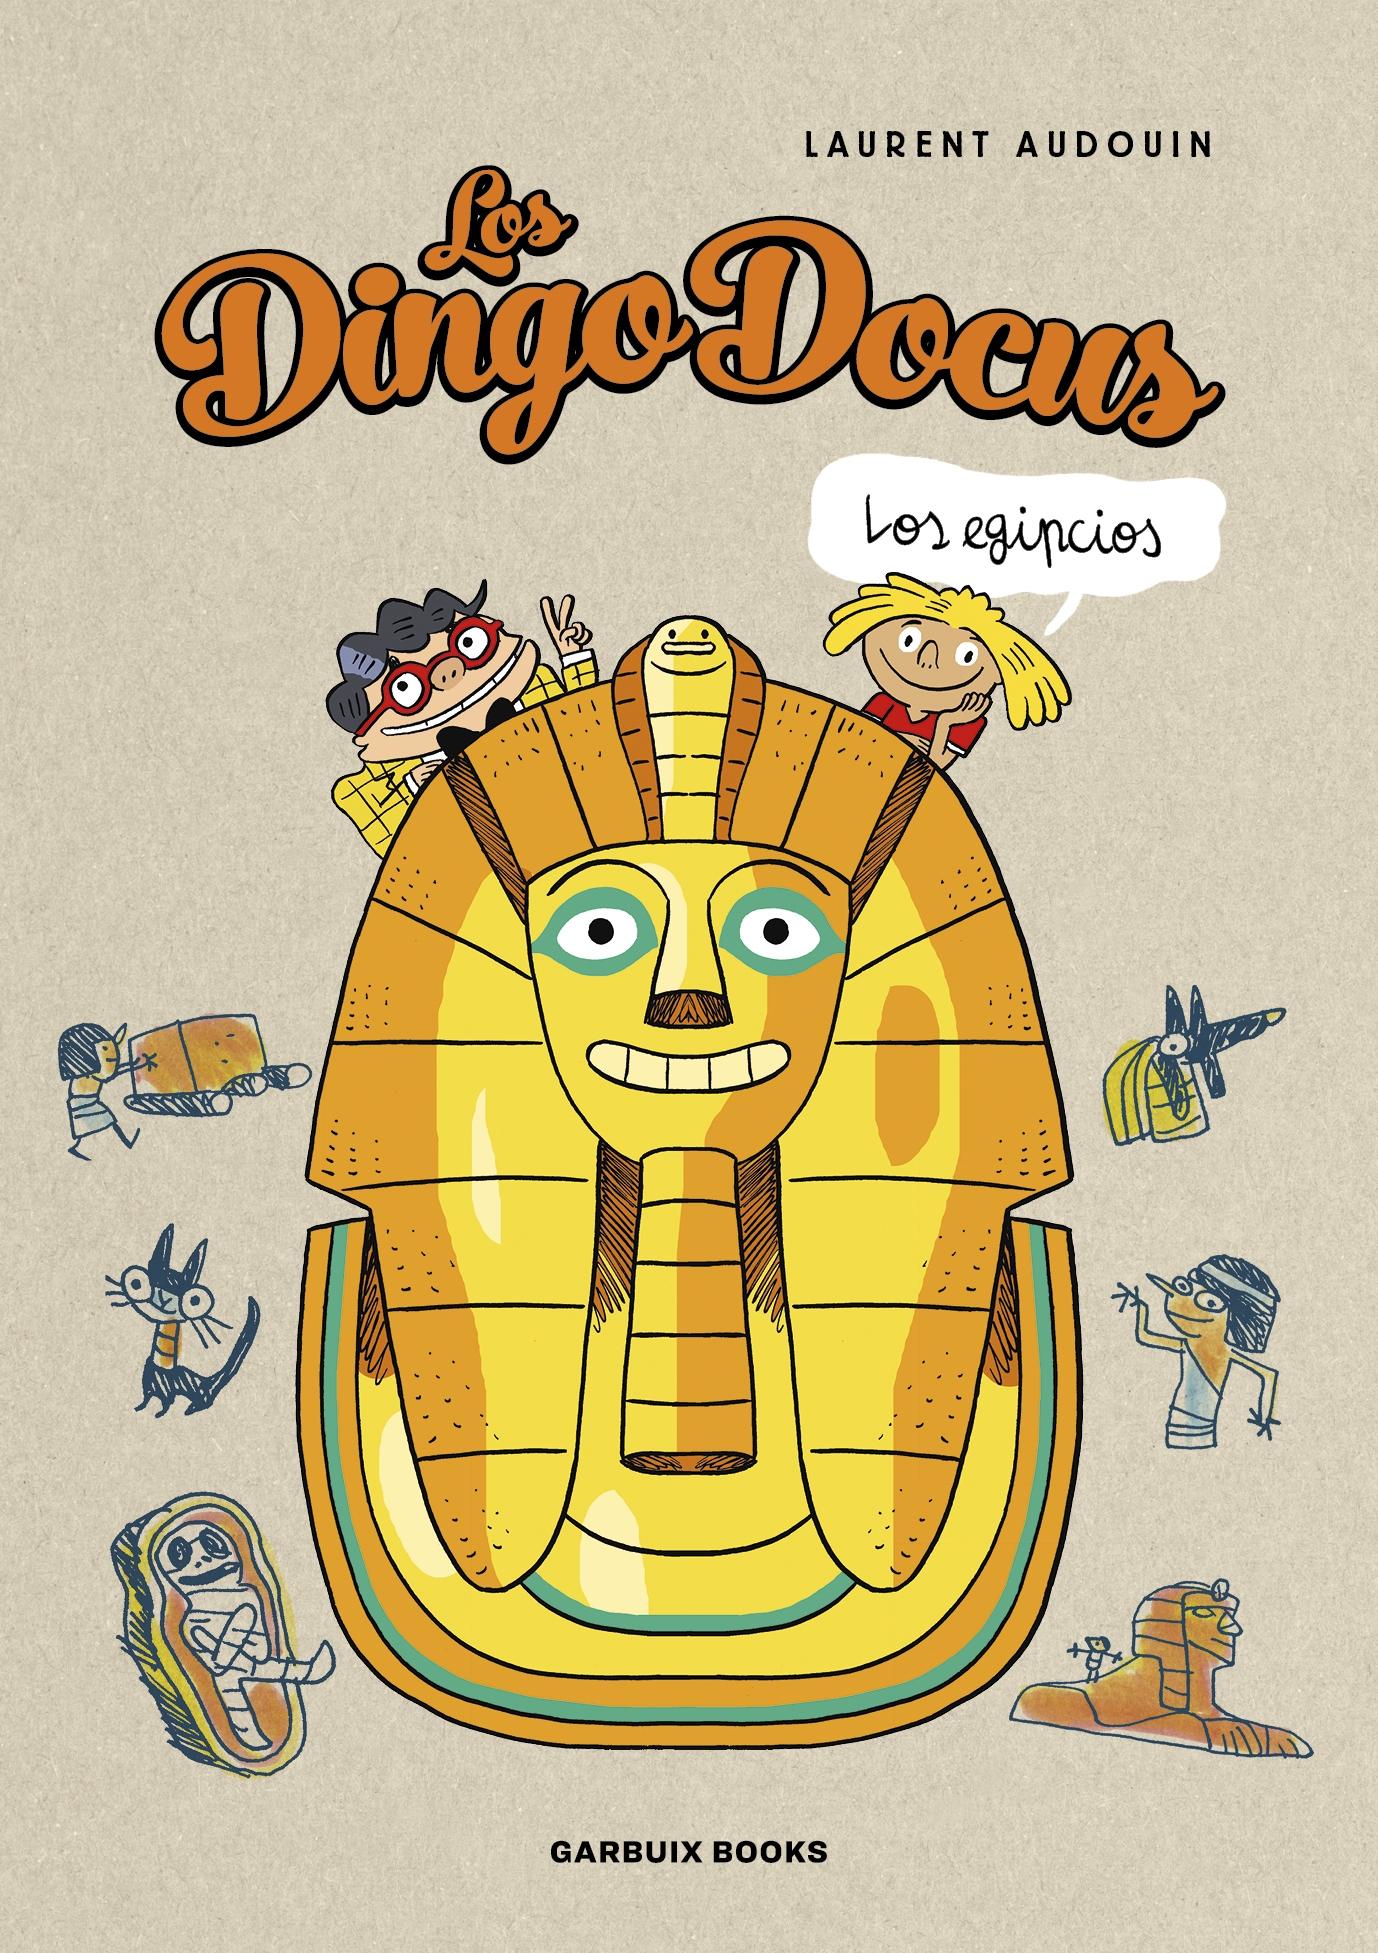 Los Dingo Docus - los Egipcios. 